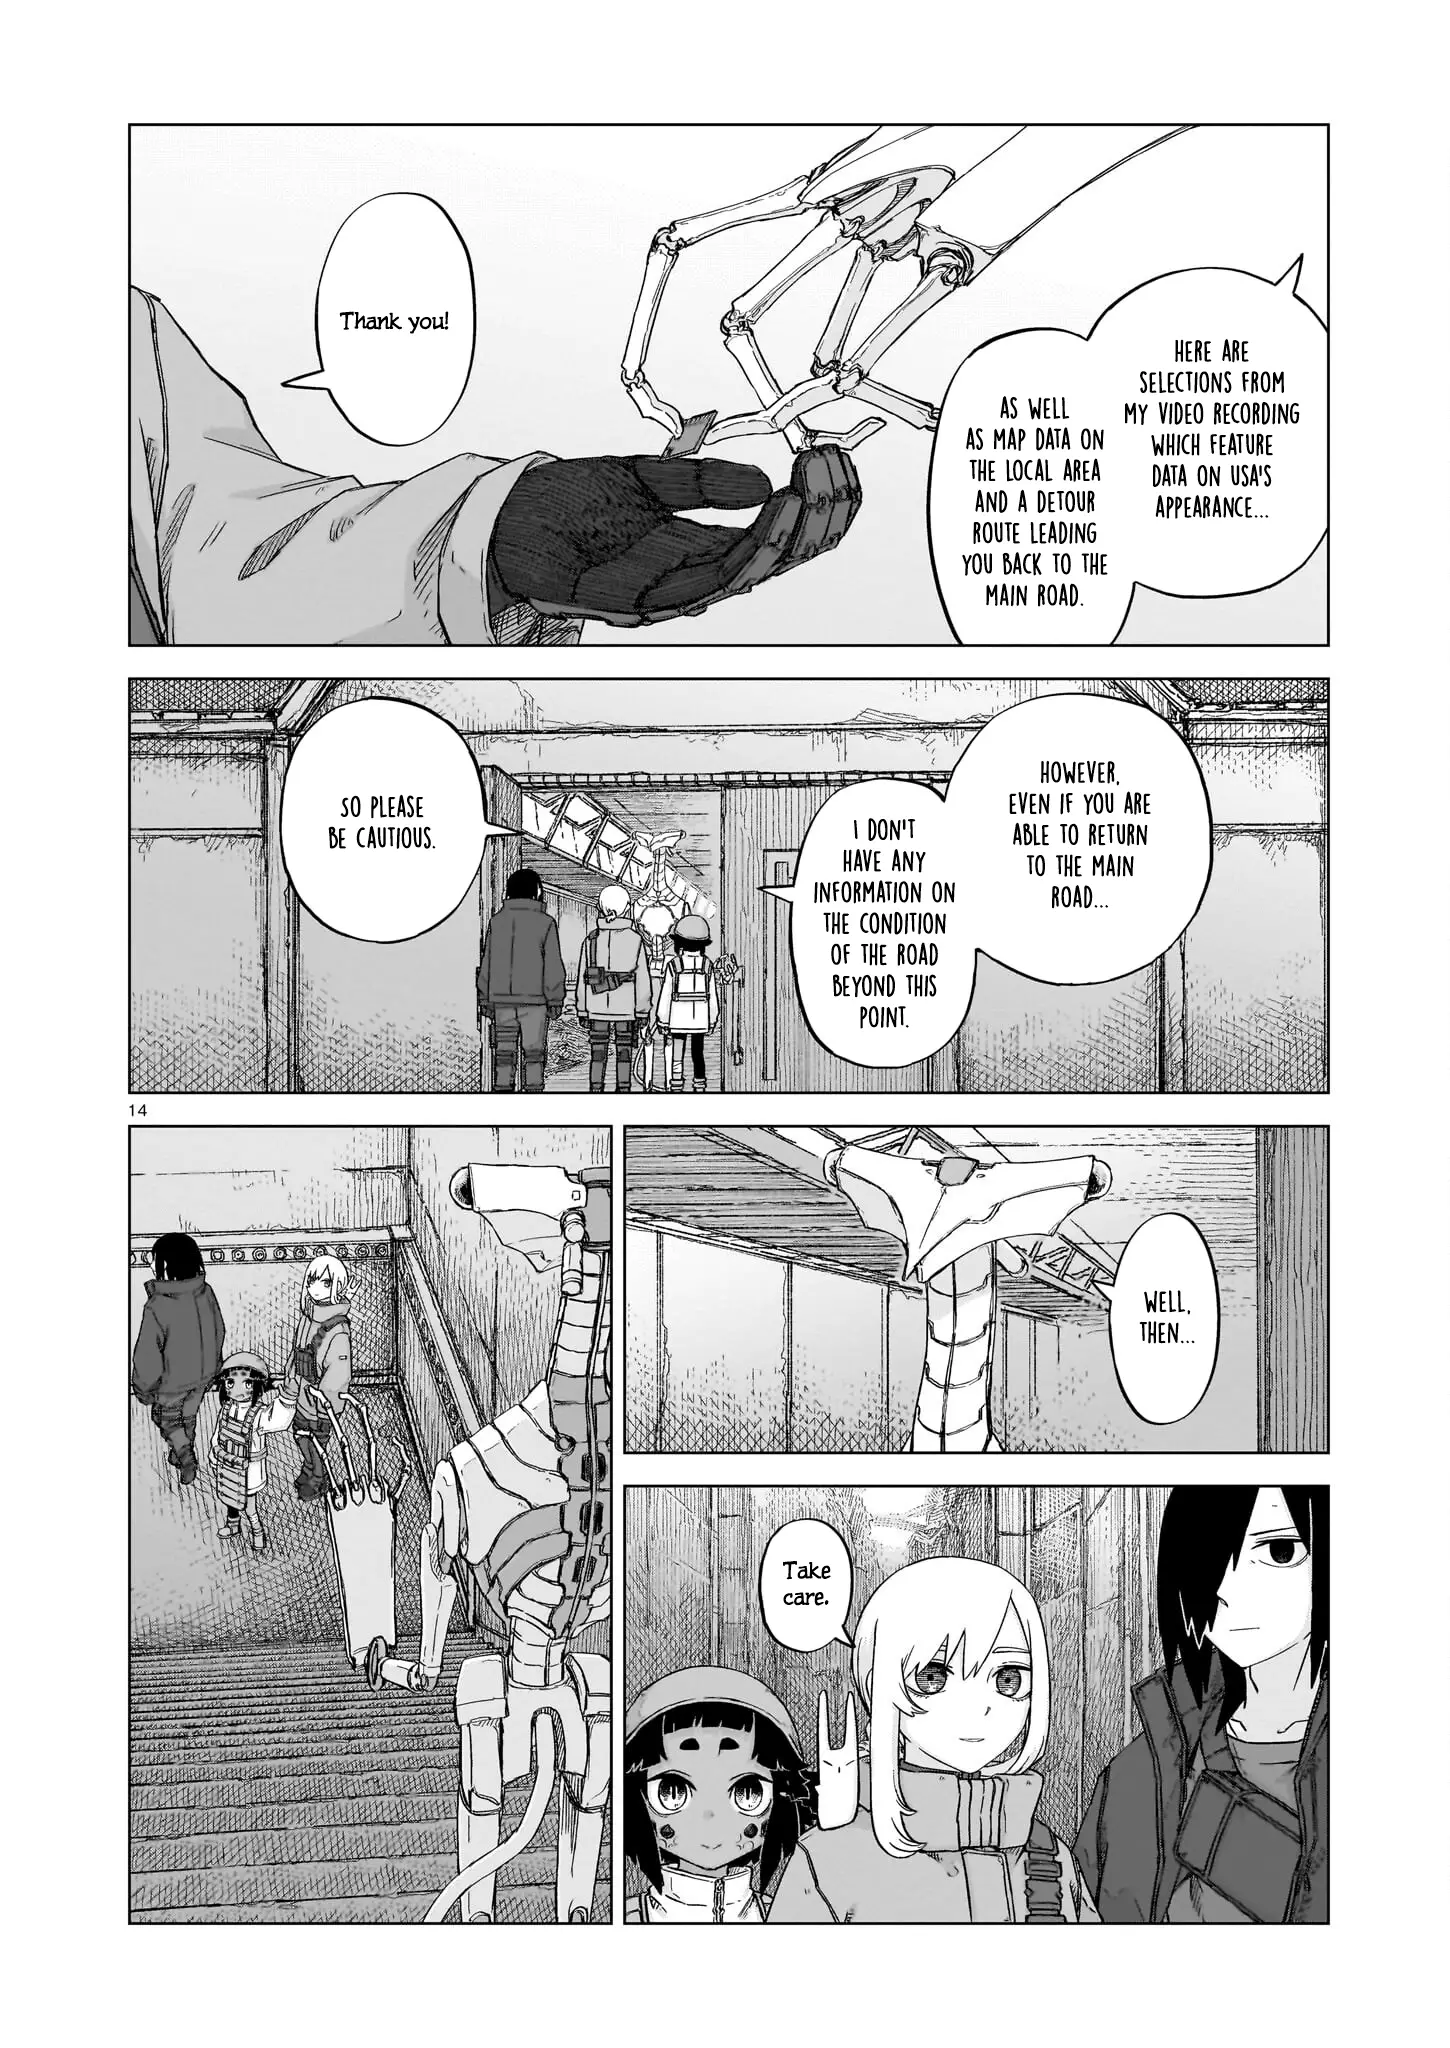 Usuzumi No Hate - 19 page 14-78f6e115